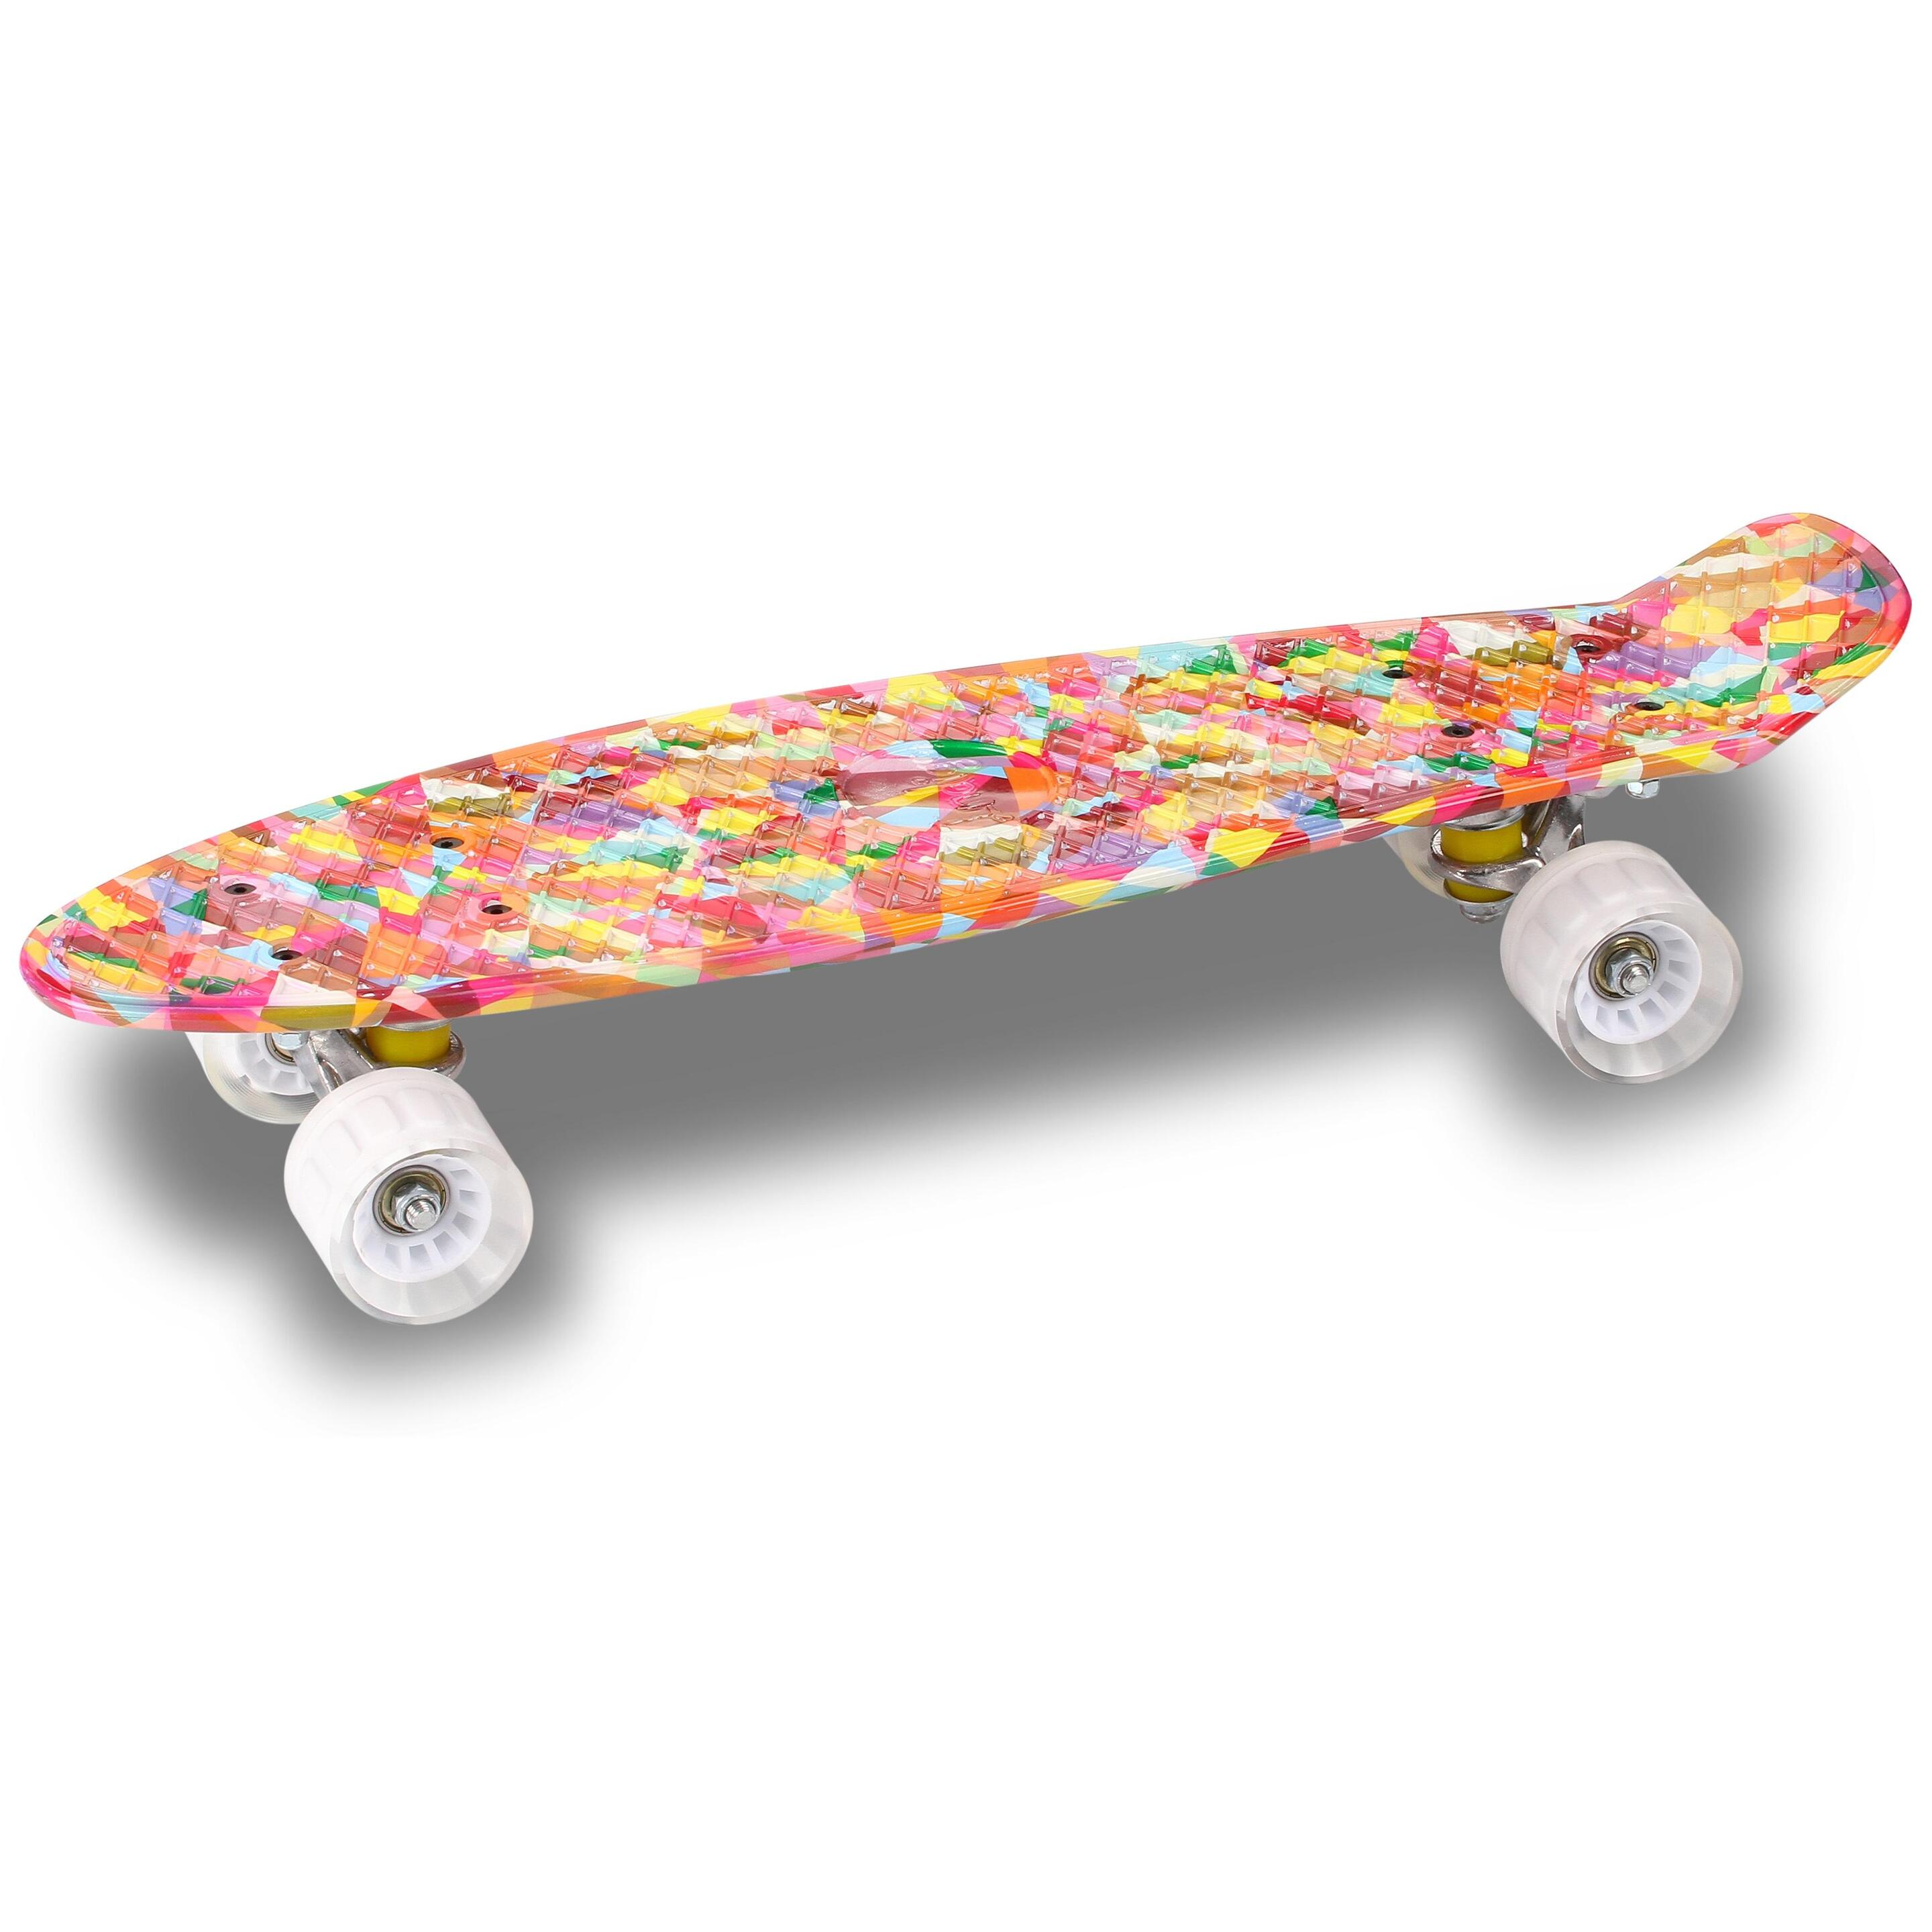 Skateboard Indigo De Pu Cruiser - multicolor - 